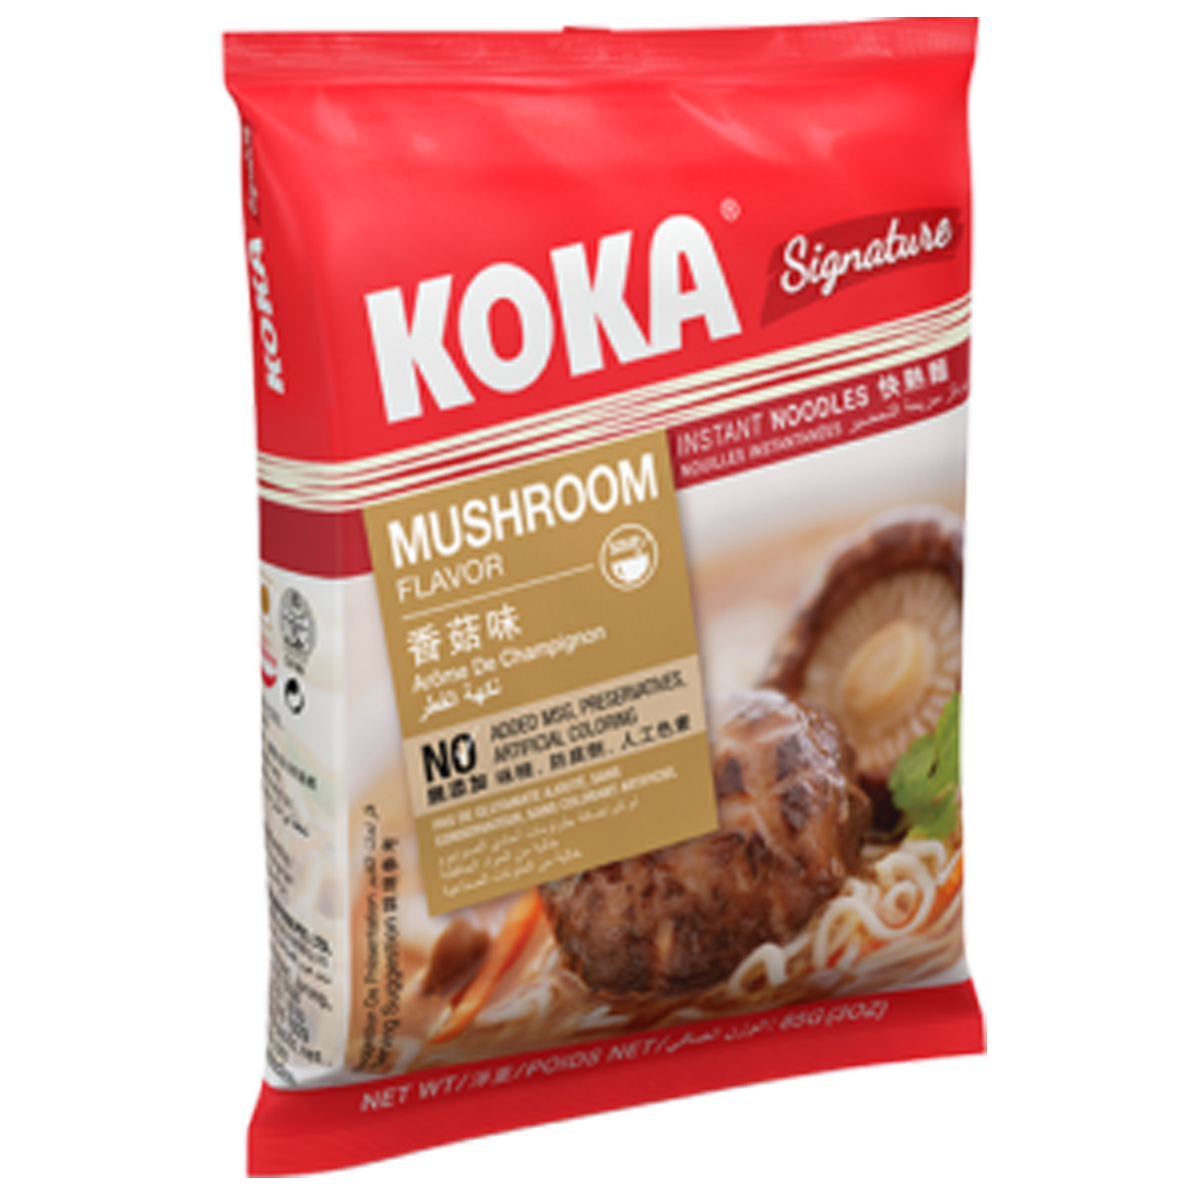 Koka Signature Mushroom Flavor 85g